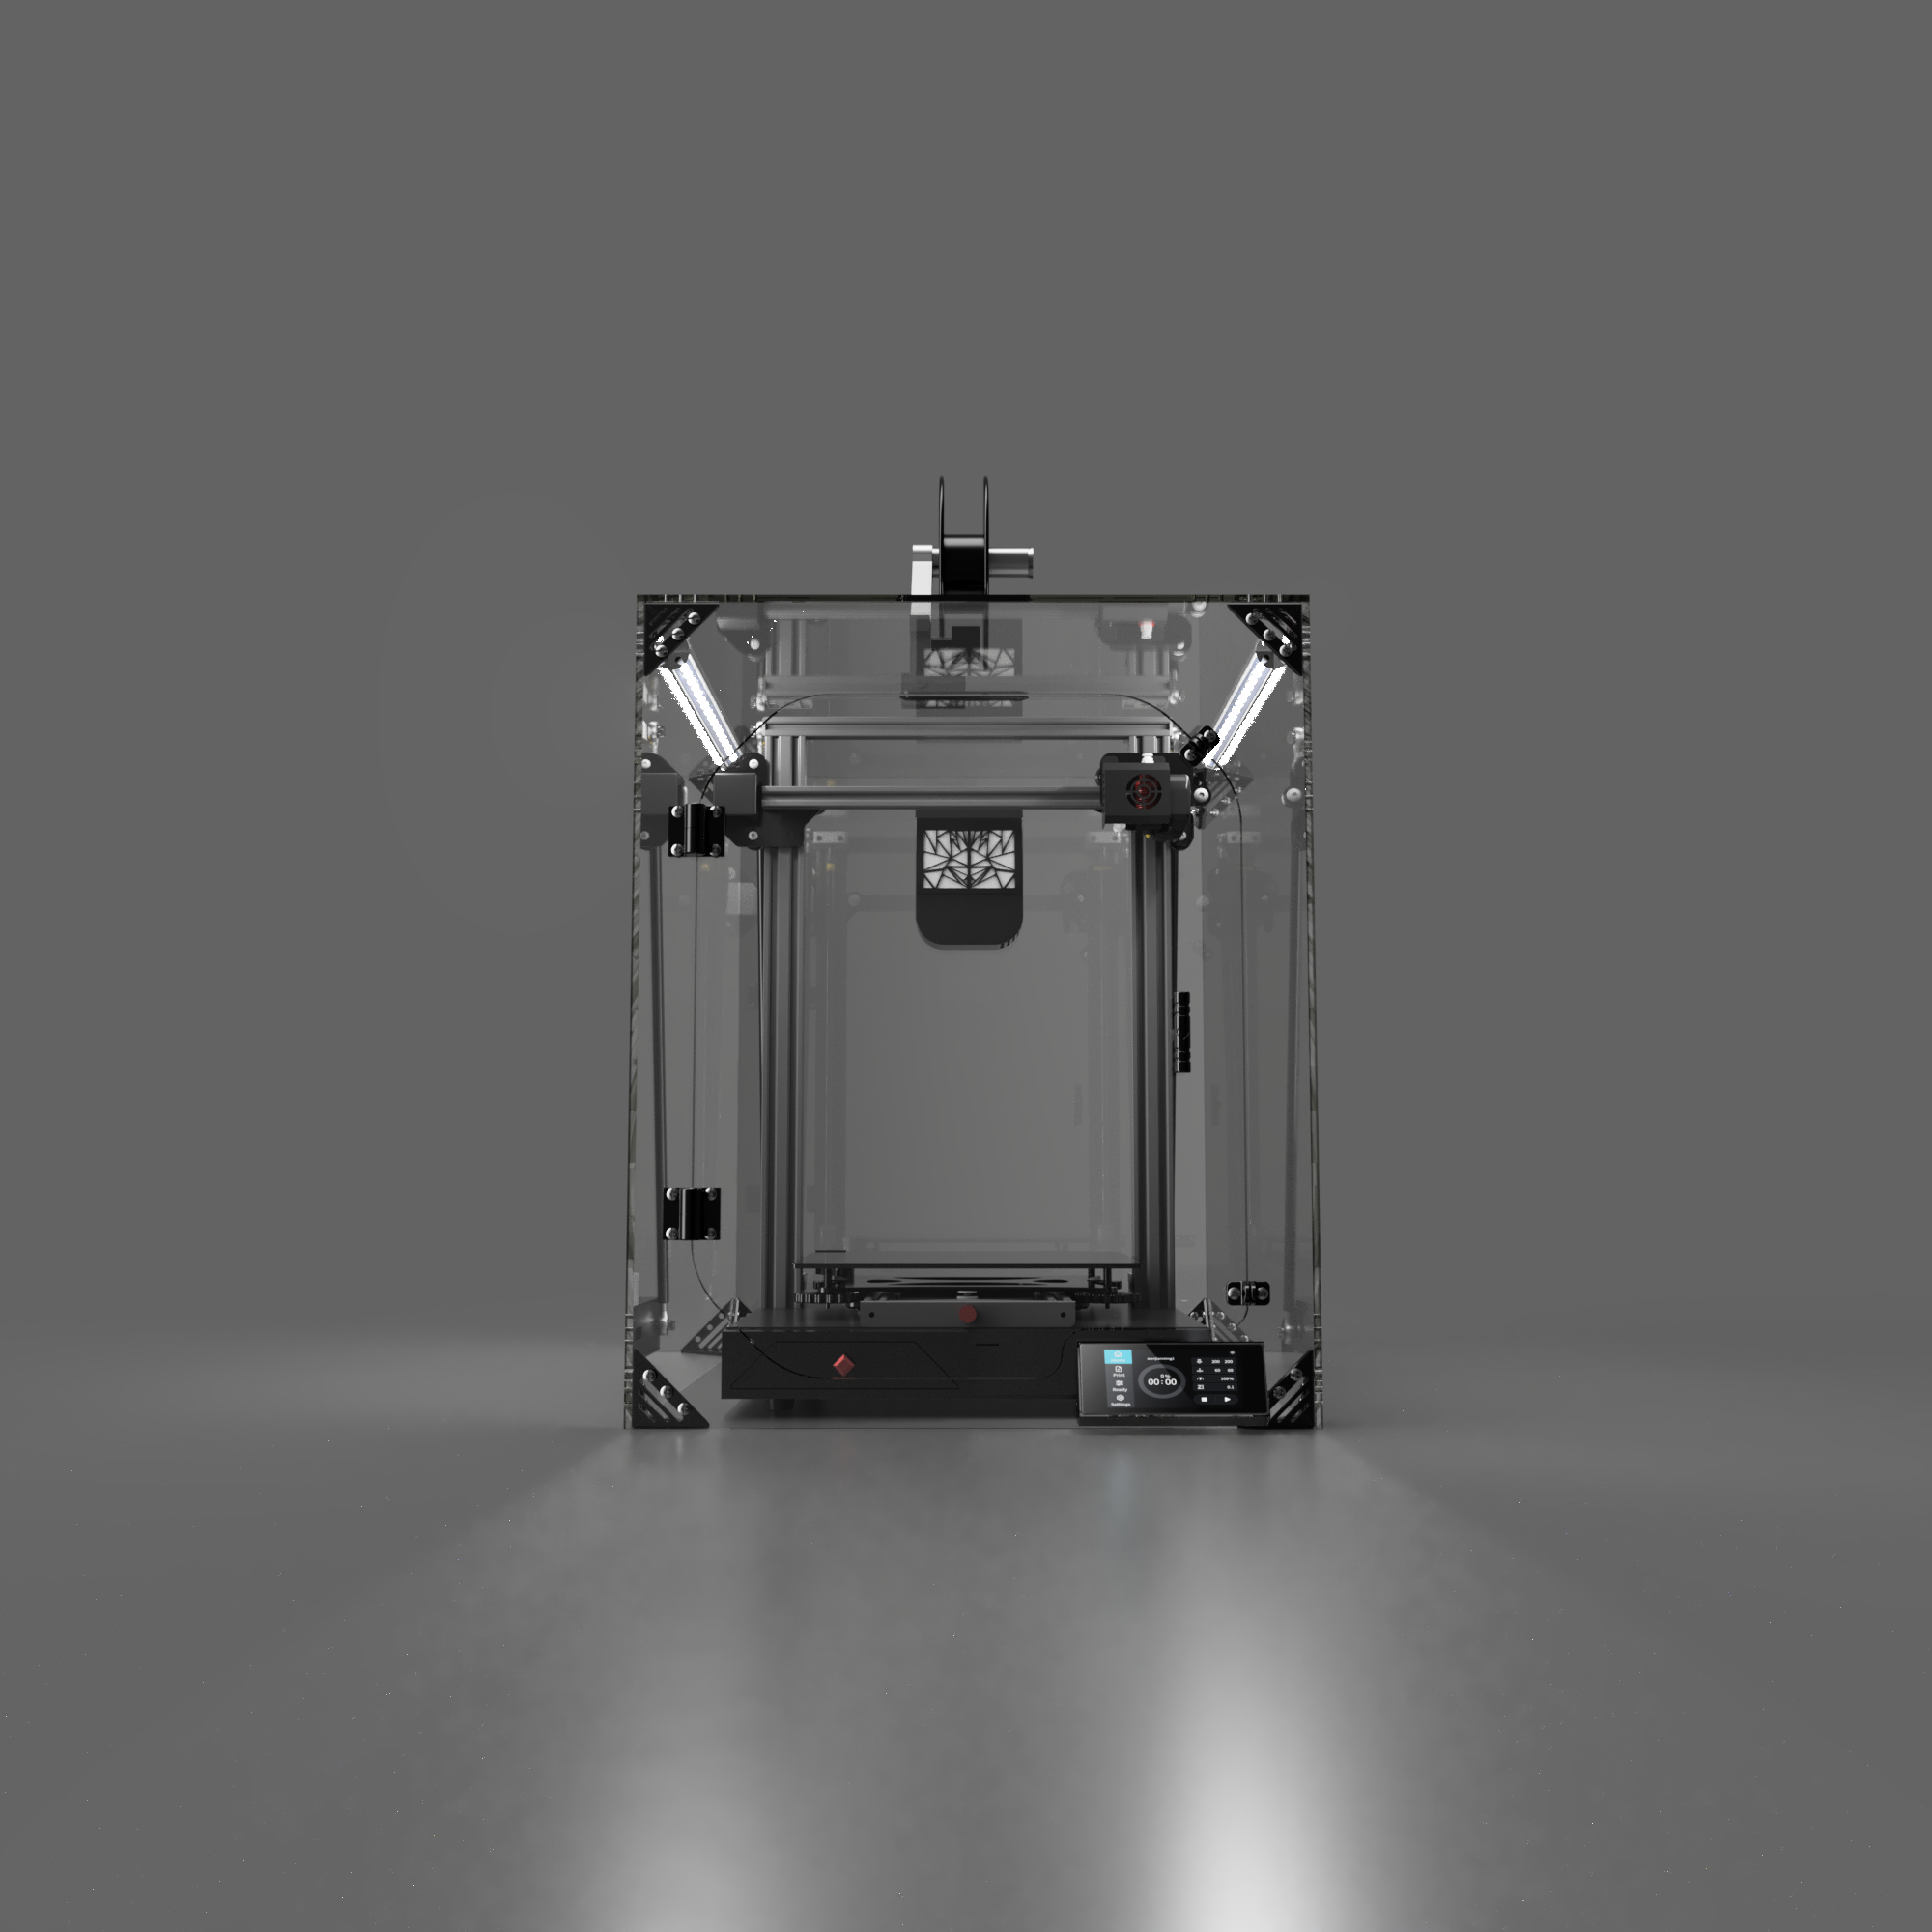 Creality CR-10 3D printer